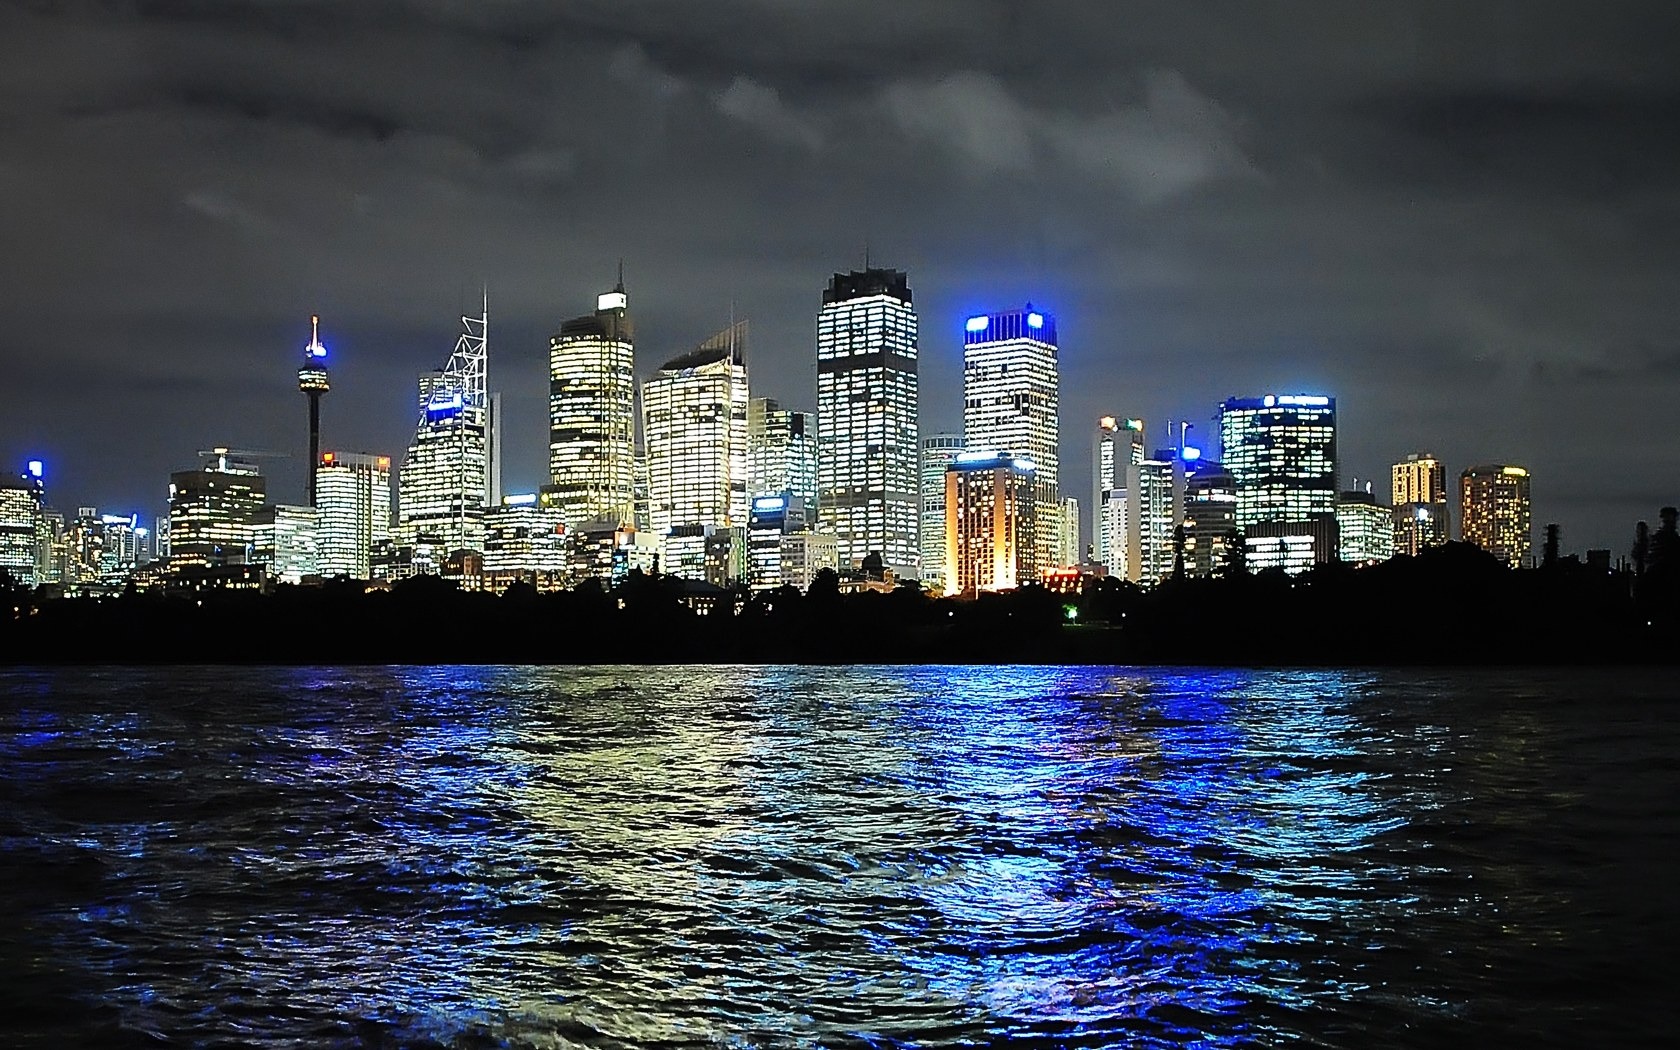 シドニーの風景のHD画像 #10 - 1680x1050